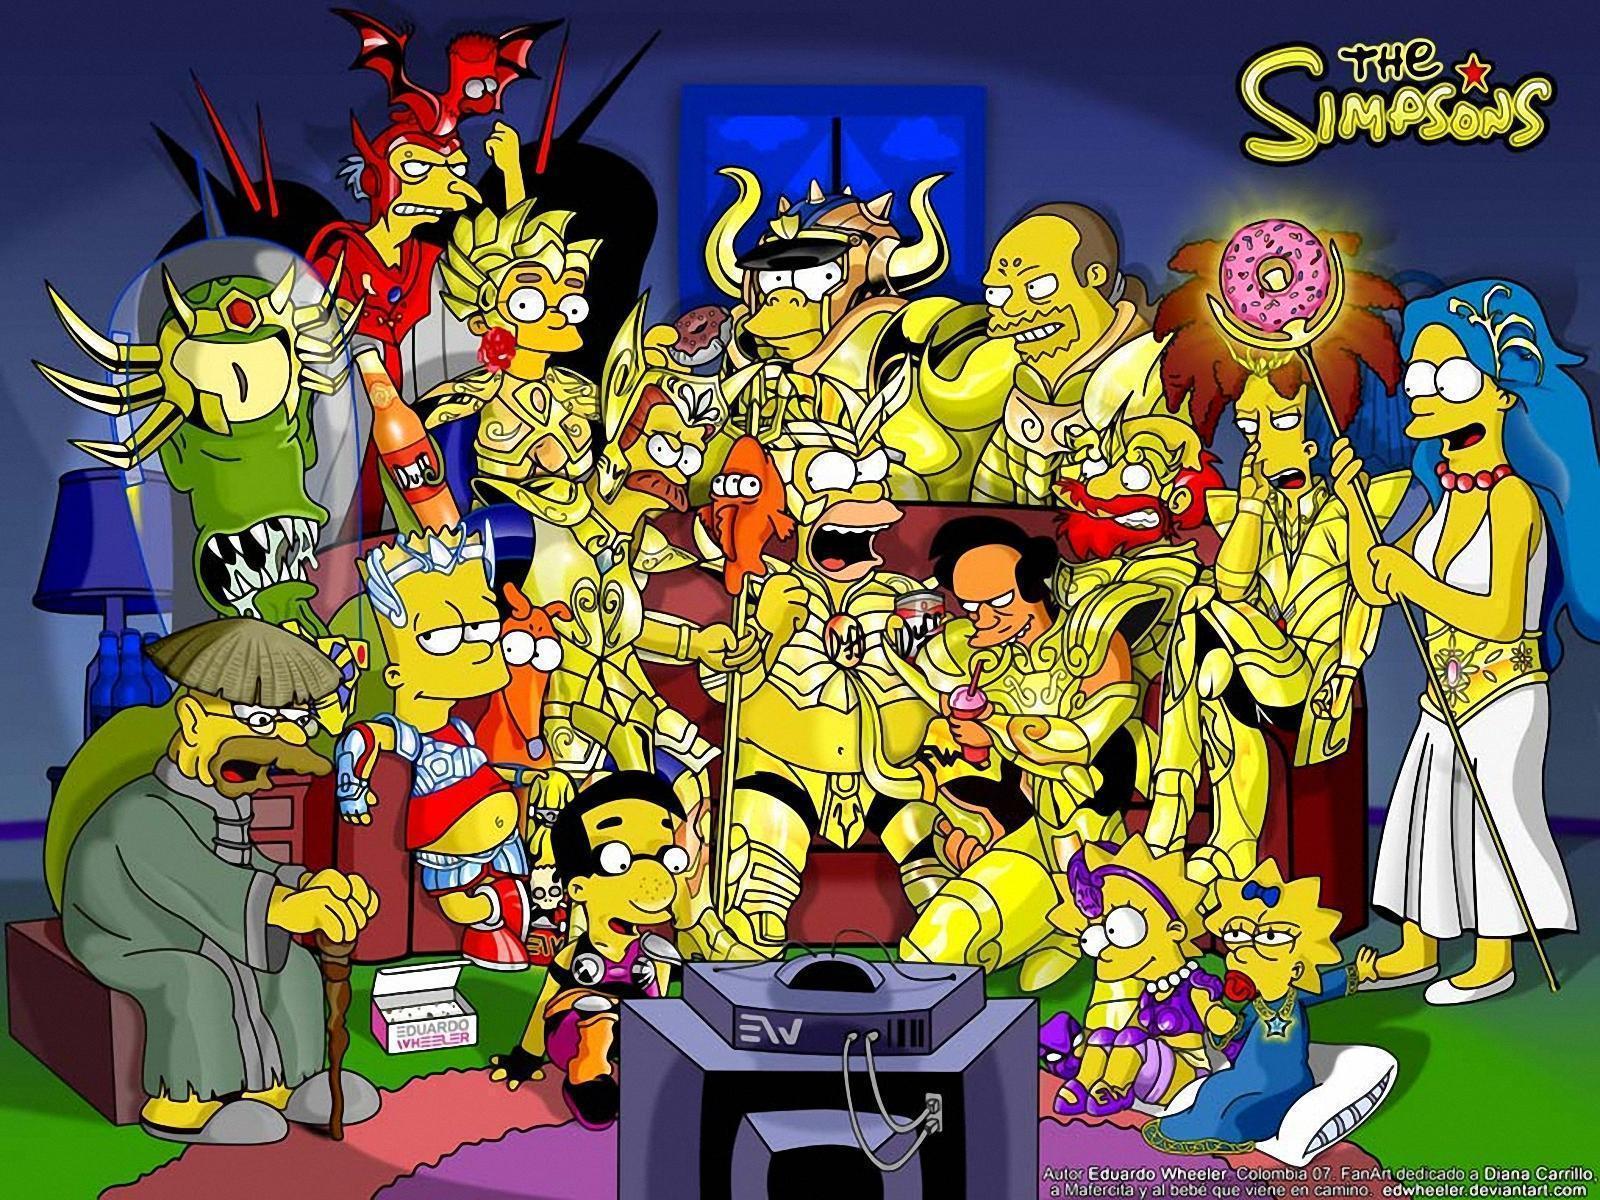 Simpsons saint Seiya free desktop background wallpaper image